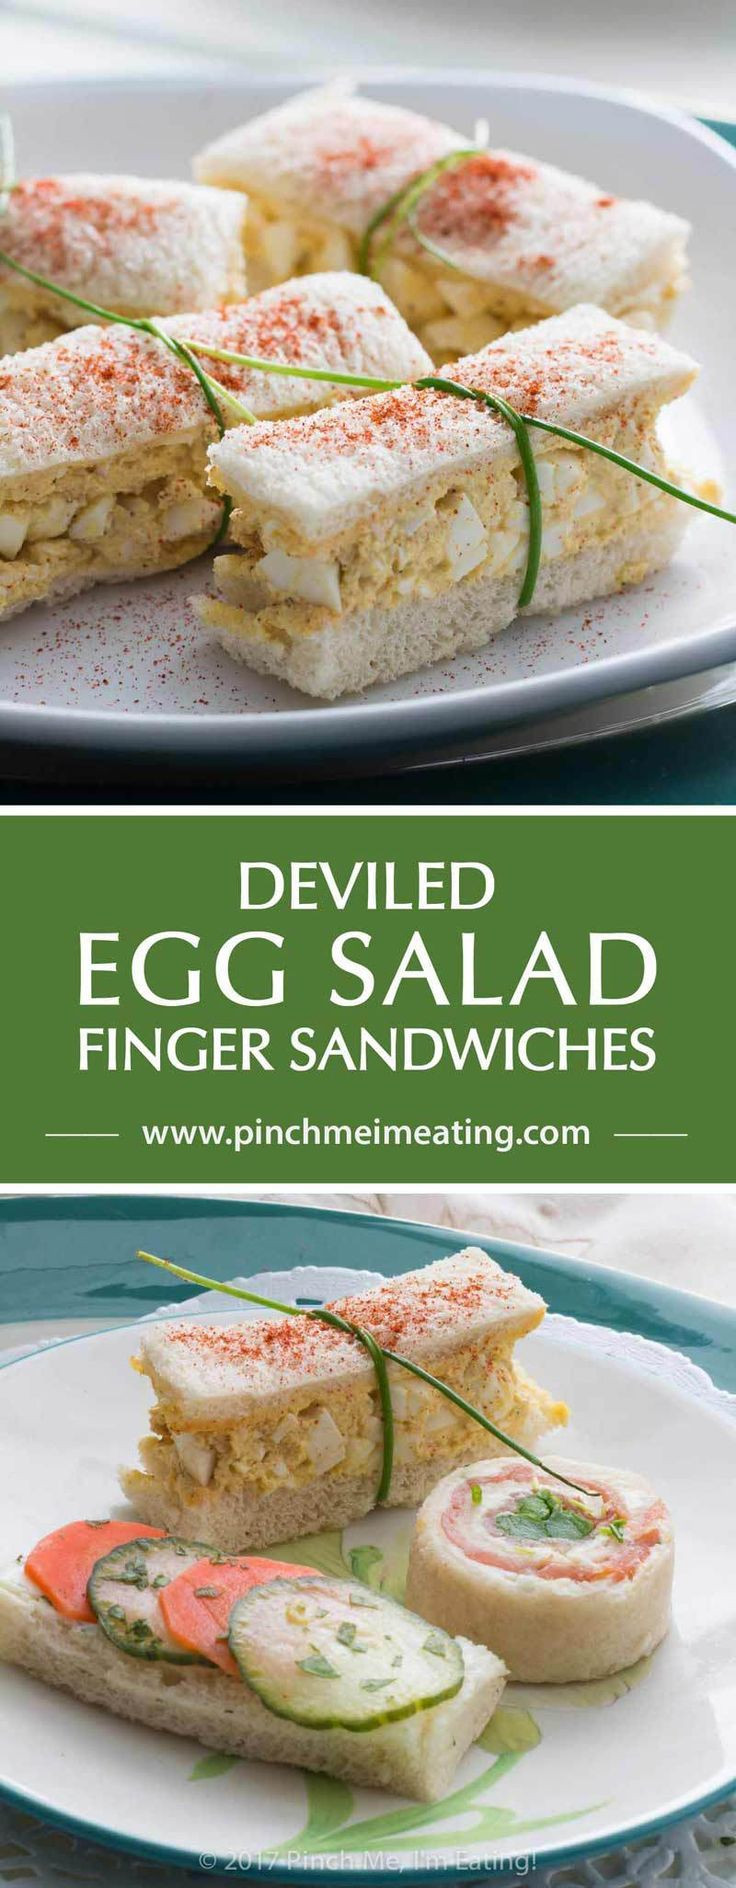 Tea Party Sandwich Ideas
 Deviled Egg Salad Finger Sandwiches Recipe